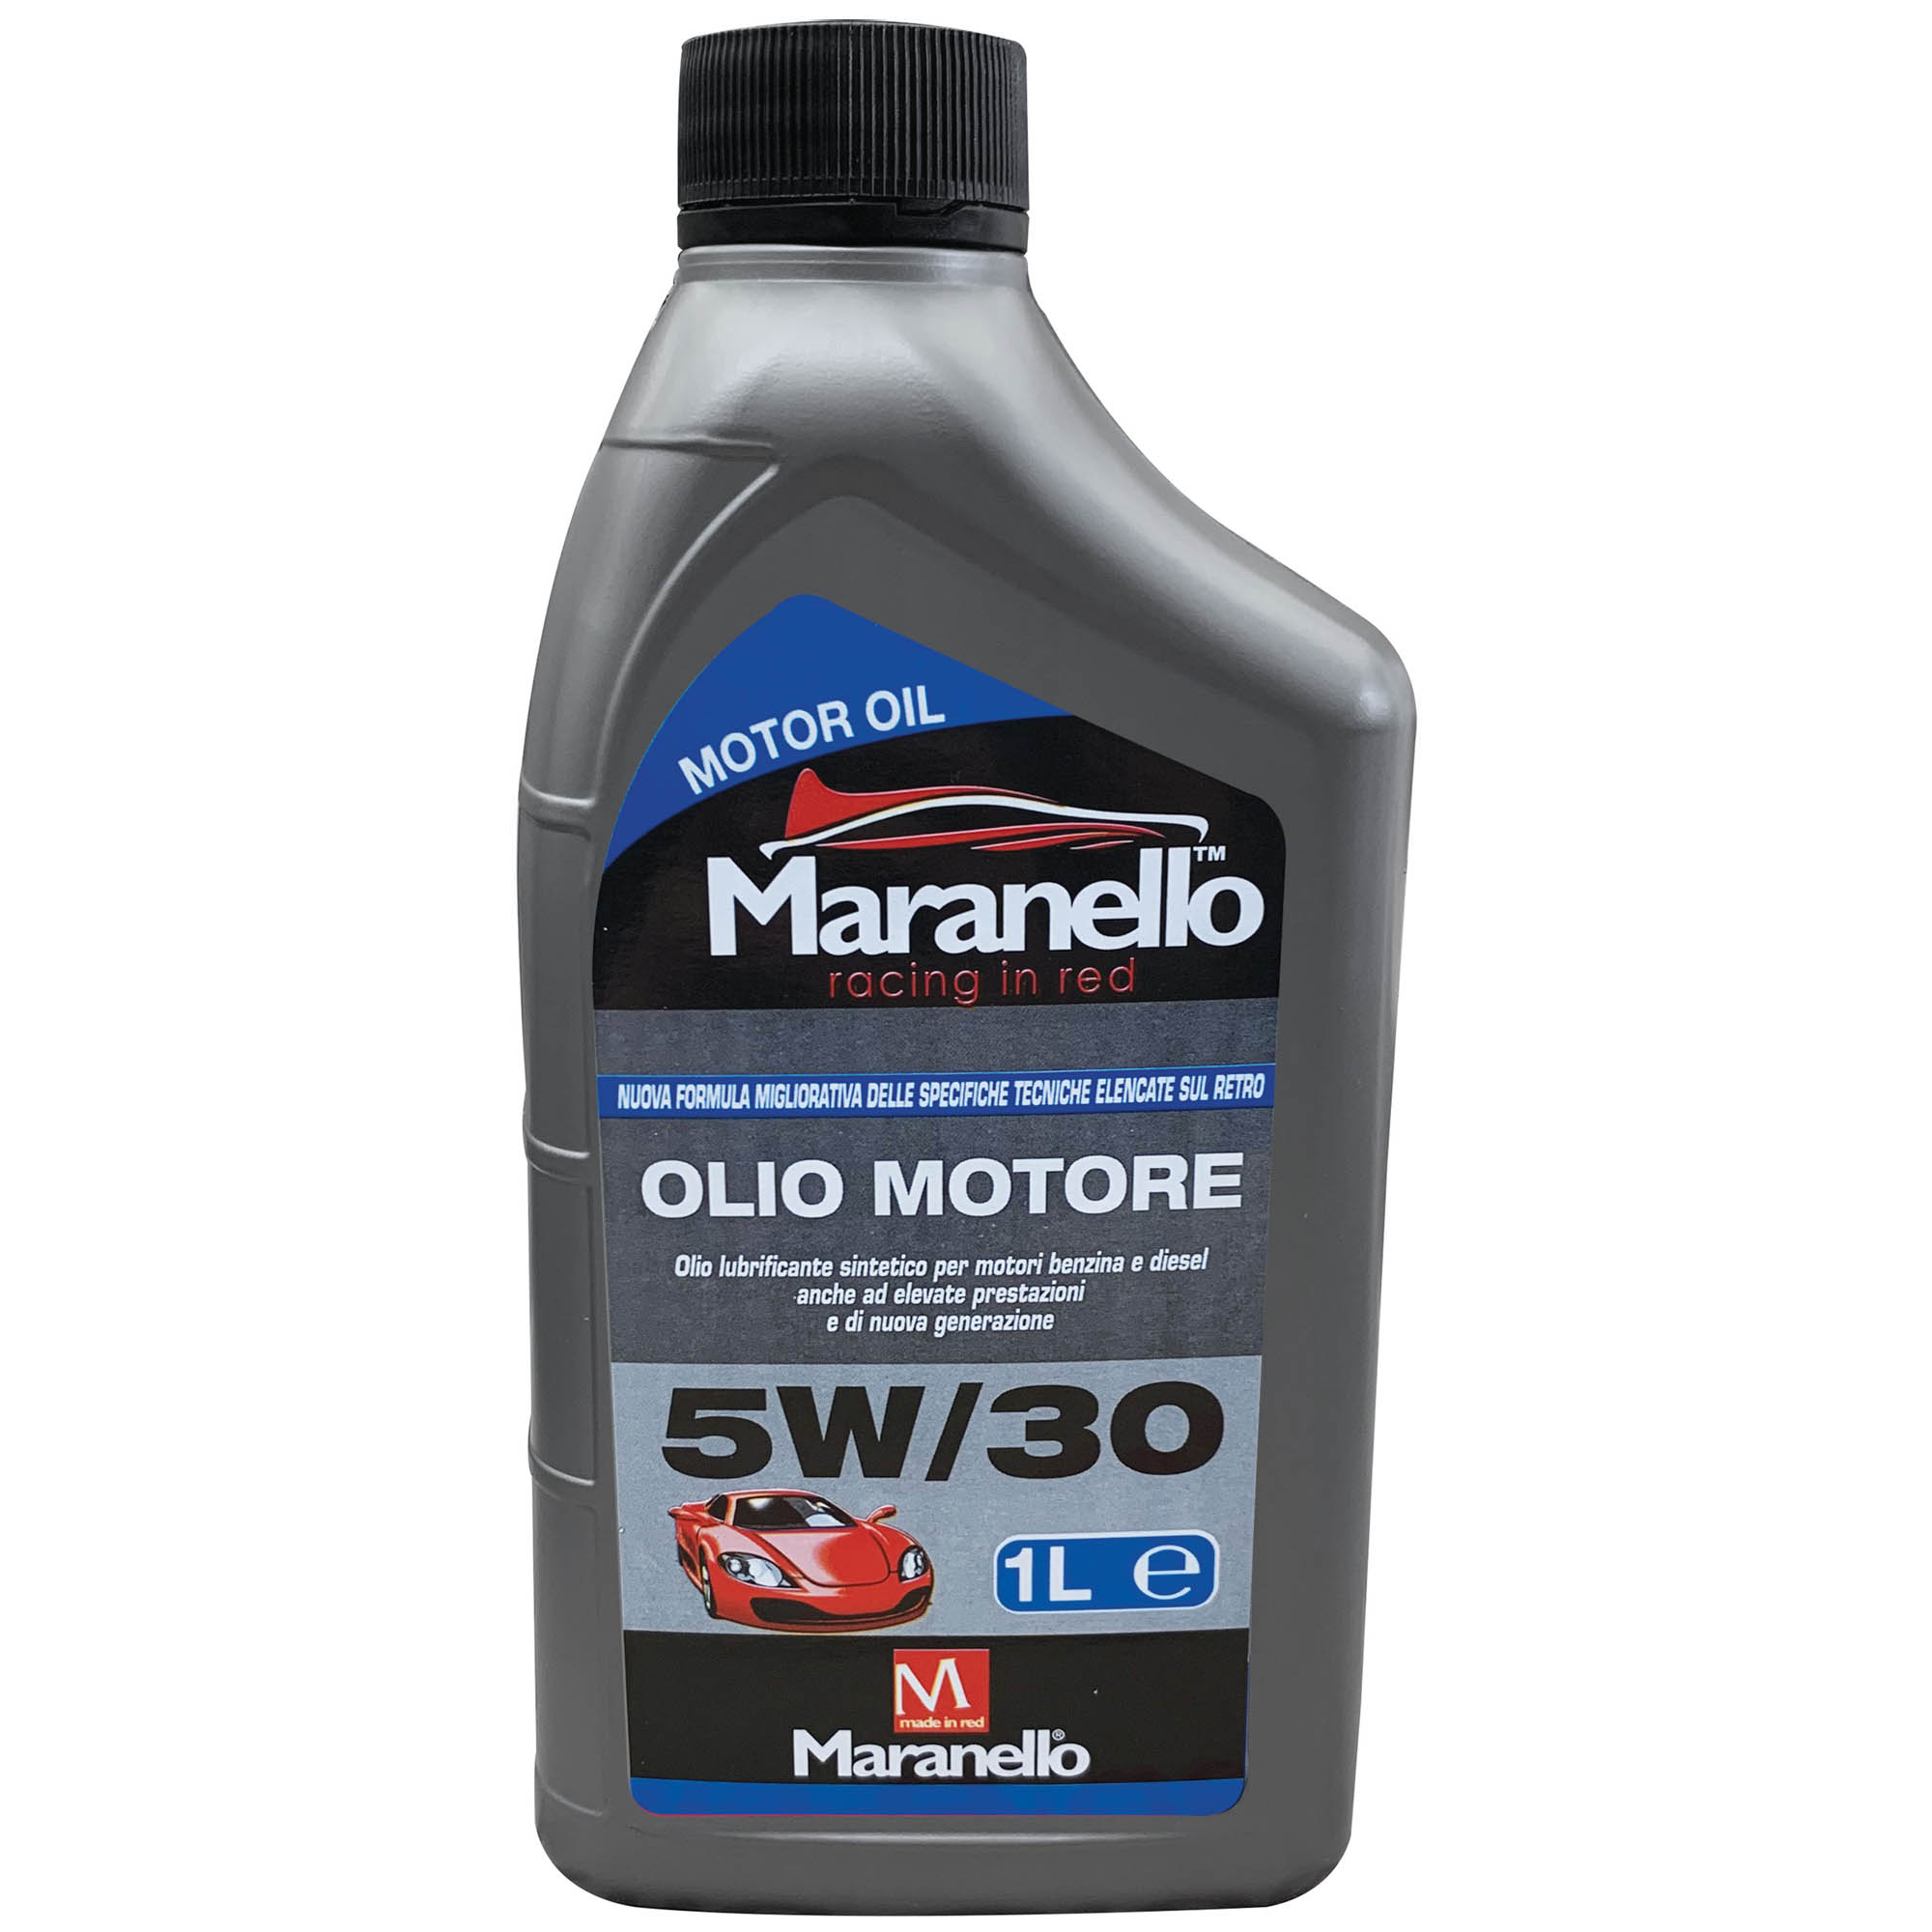 OLIO MOTORE 5W30 Maranello 1 litro – DAC Srl